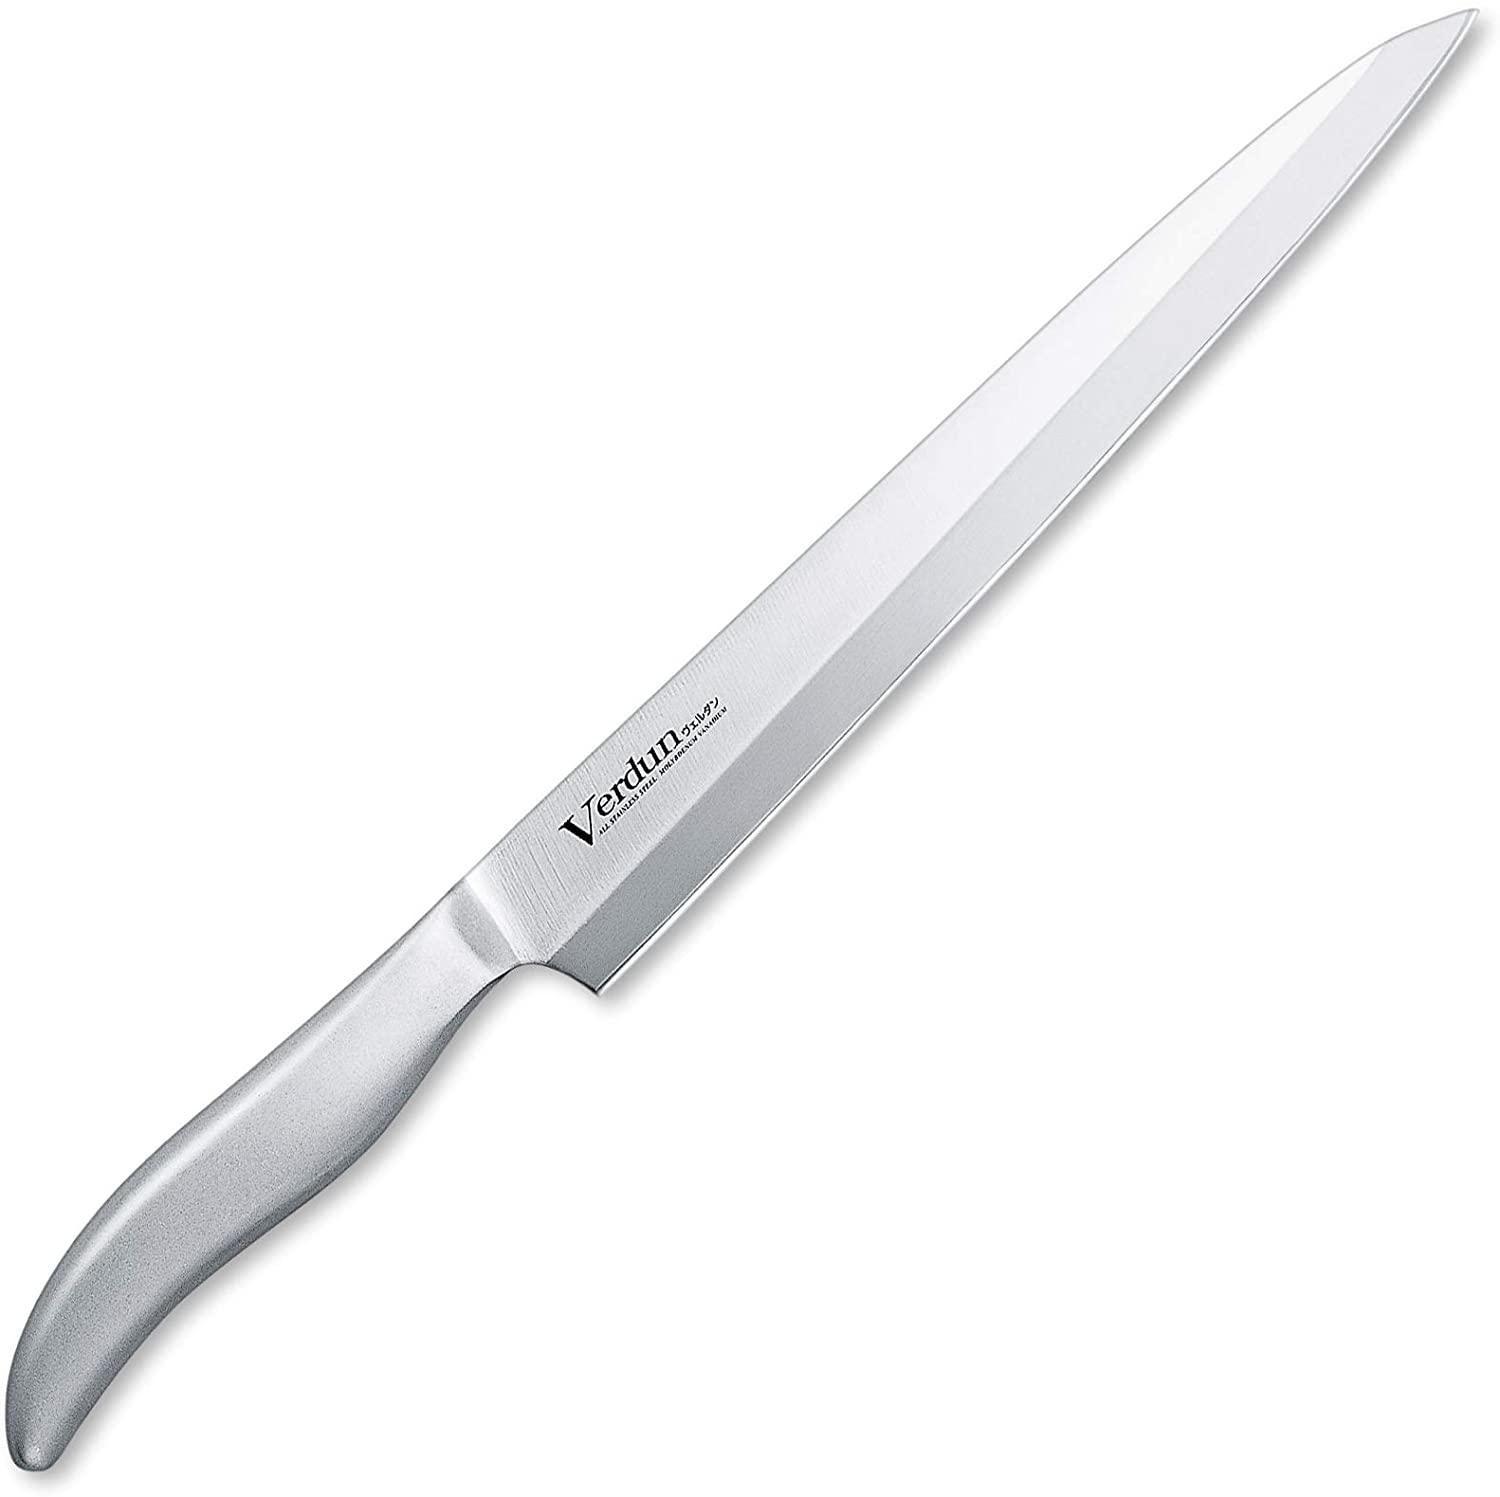 柳刃240mm刺身包丁 刺身料理刀 Verdun S/S Sashimi Slicing Knife 36.2cm Made in Japan